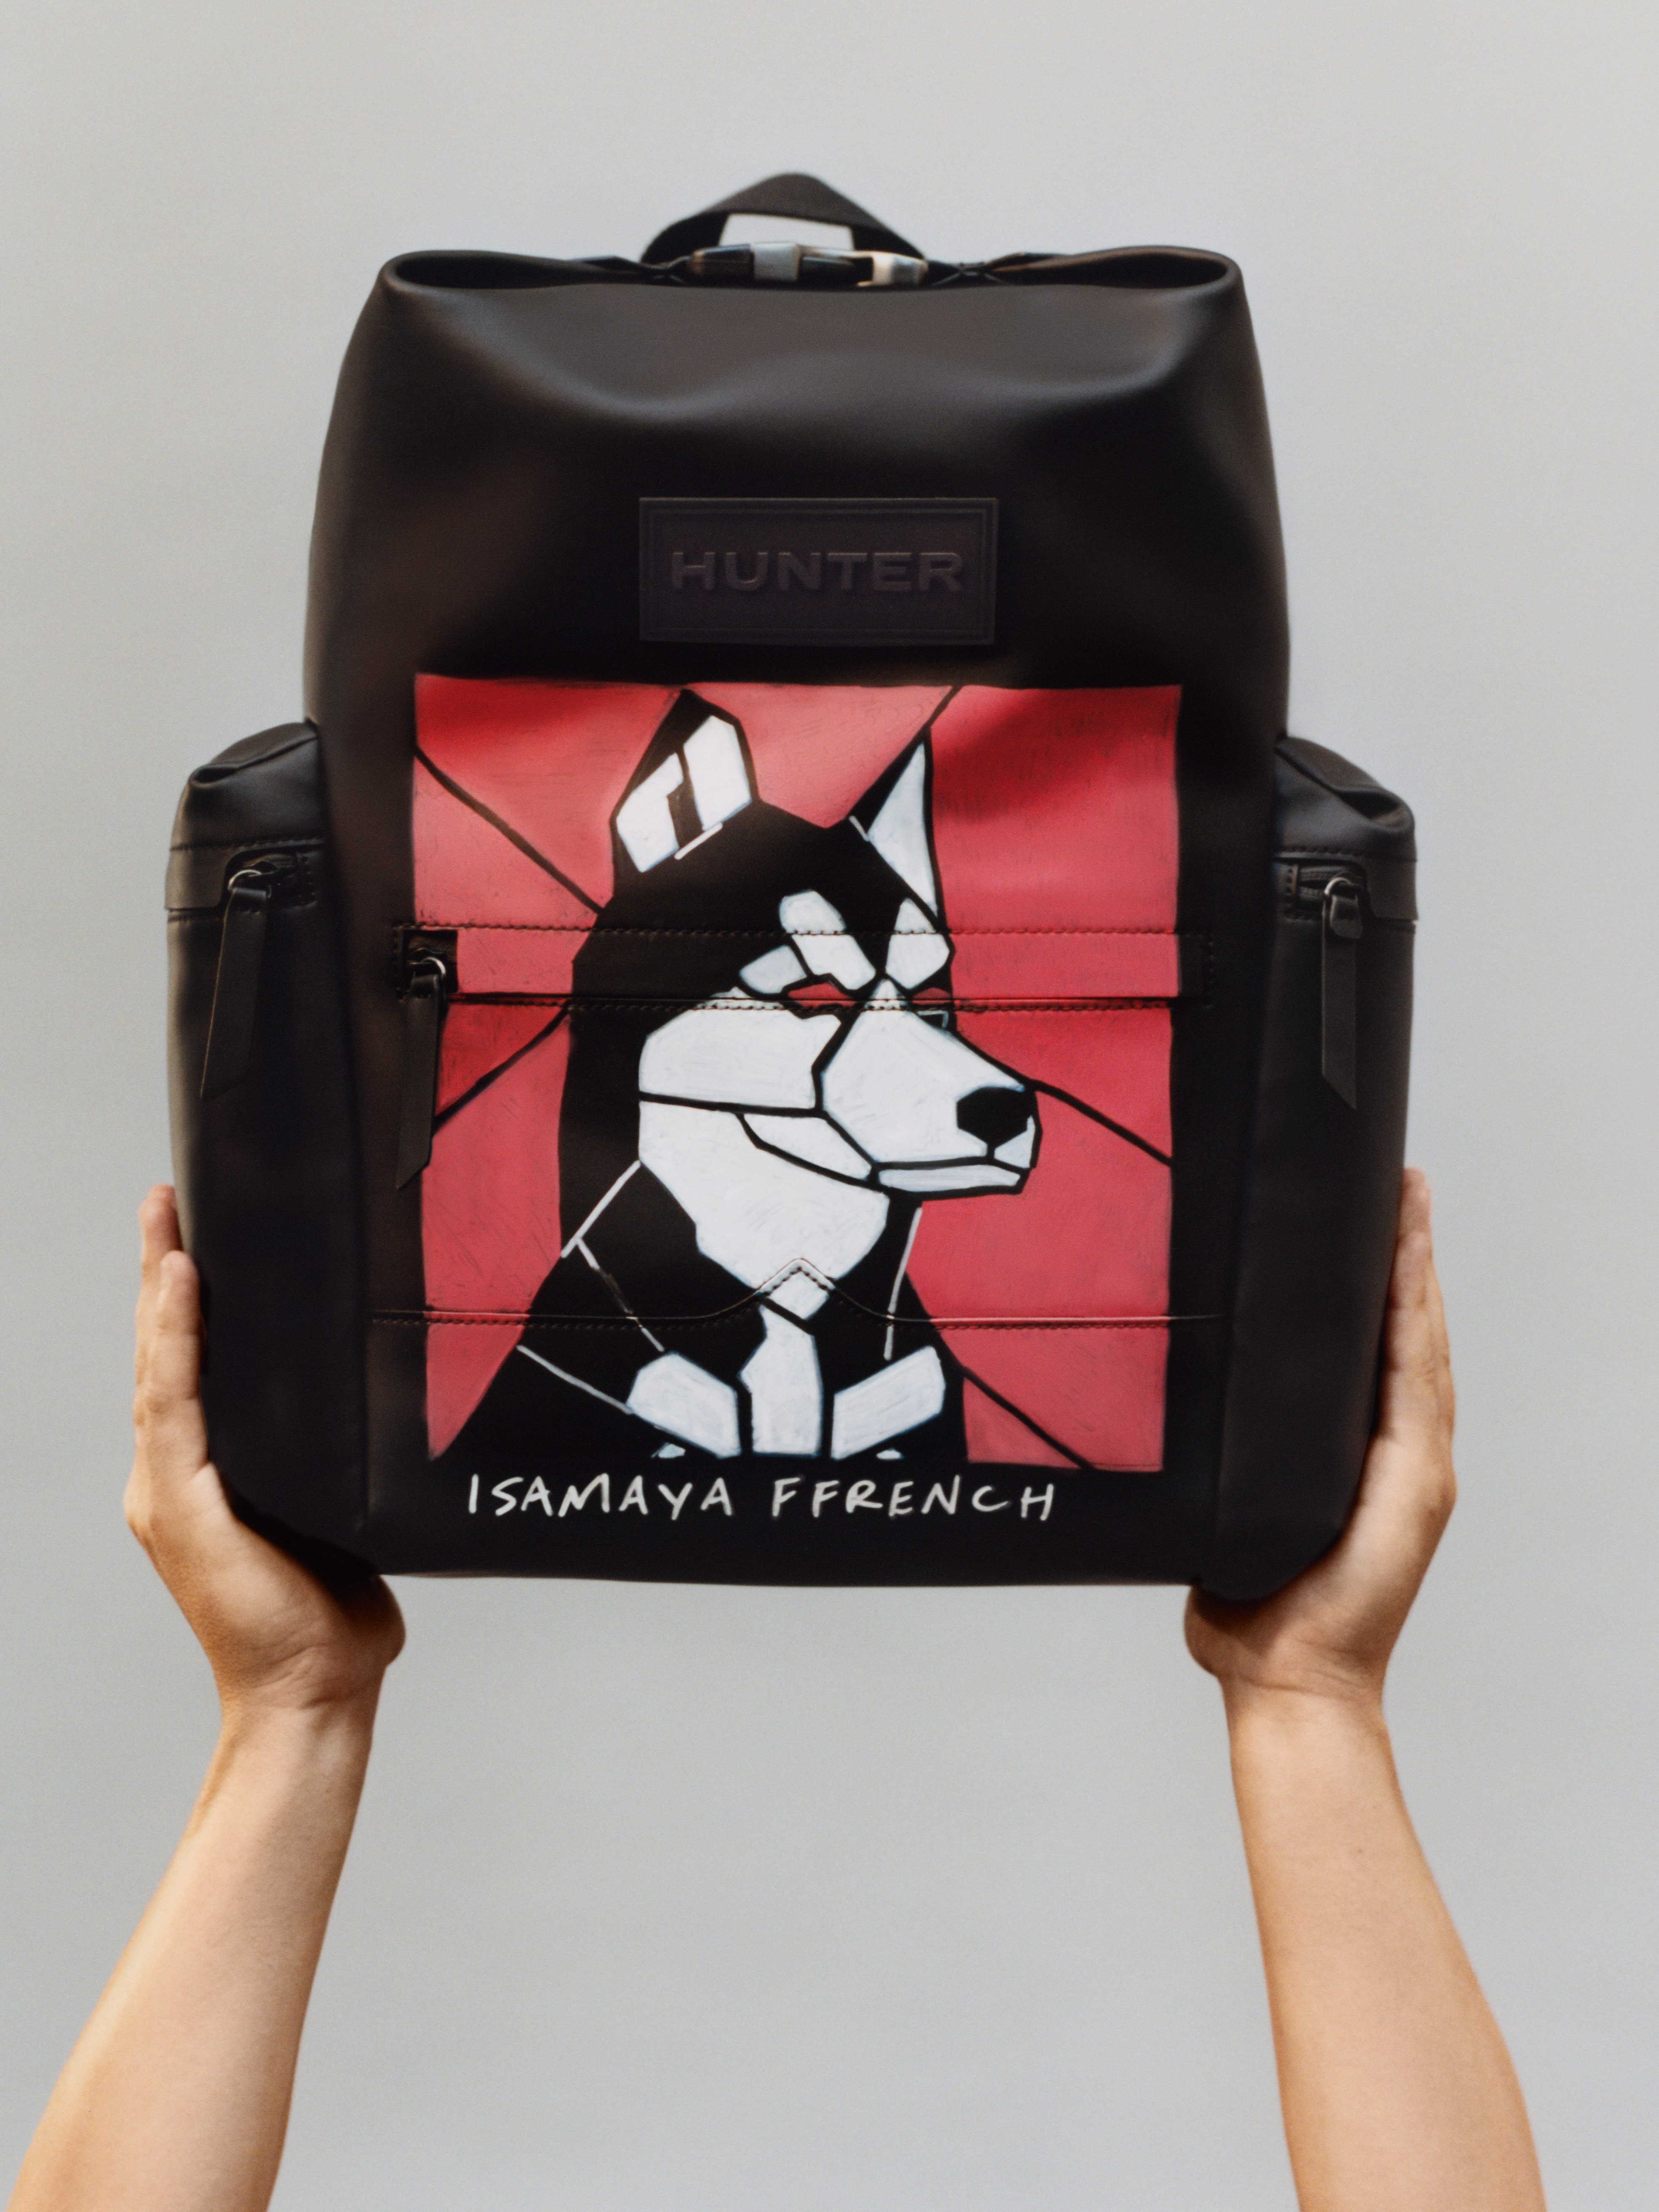 HUNTER X ISAMAYA FFRENCH 跨界合作 包包當畫布，揮灑幽默搞怪趣味